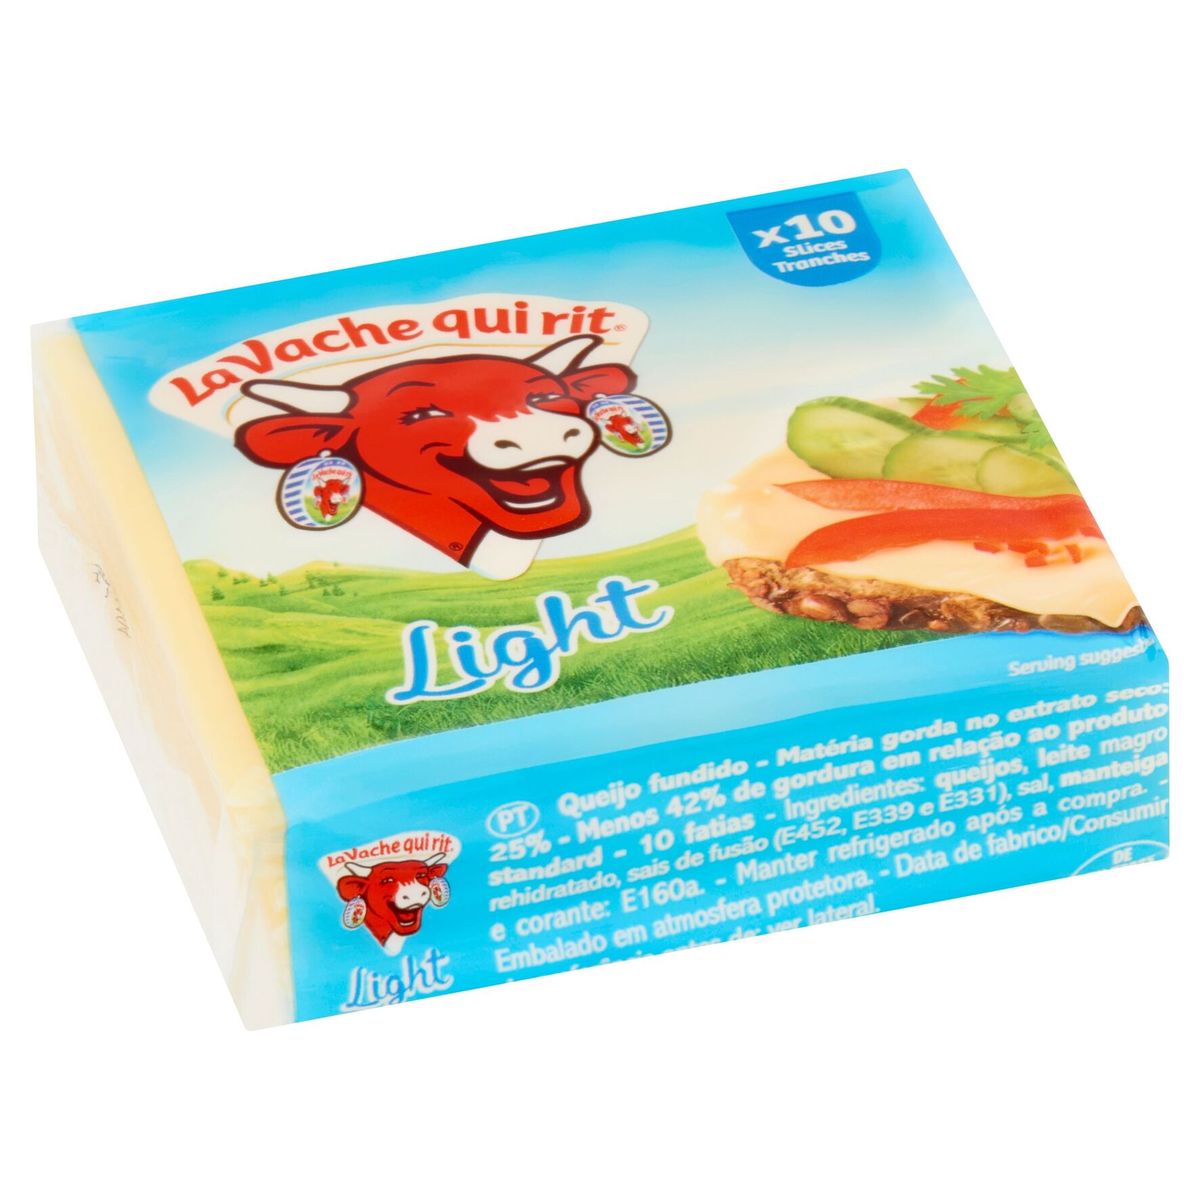 La Vache Qui Rit fromage en tranches Light 200 g